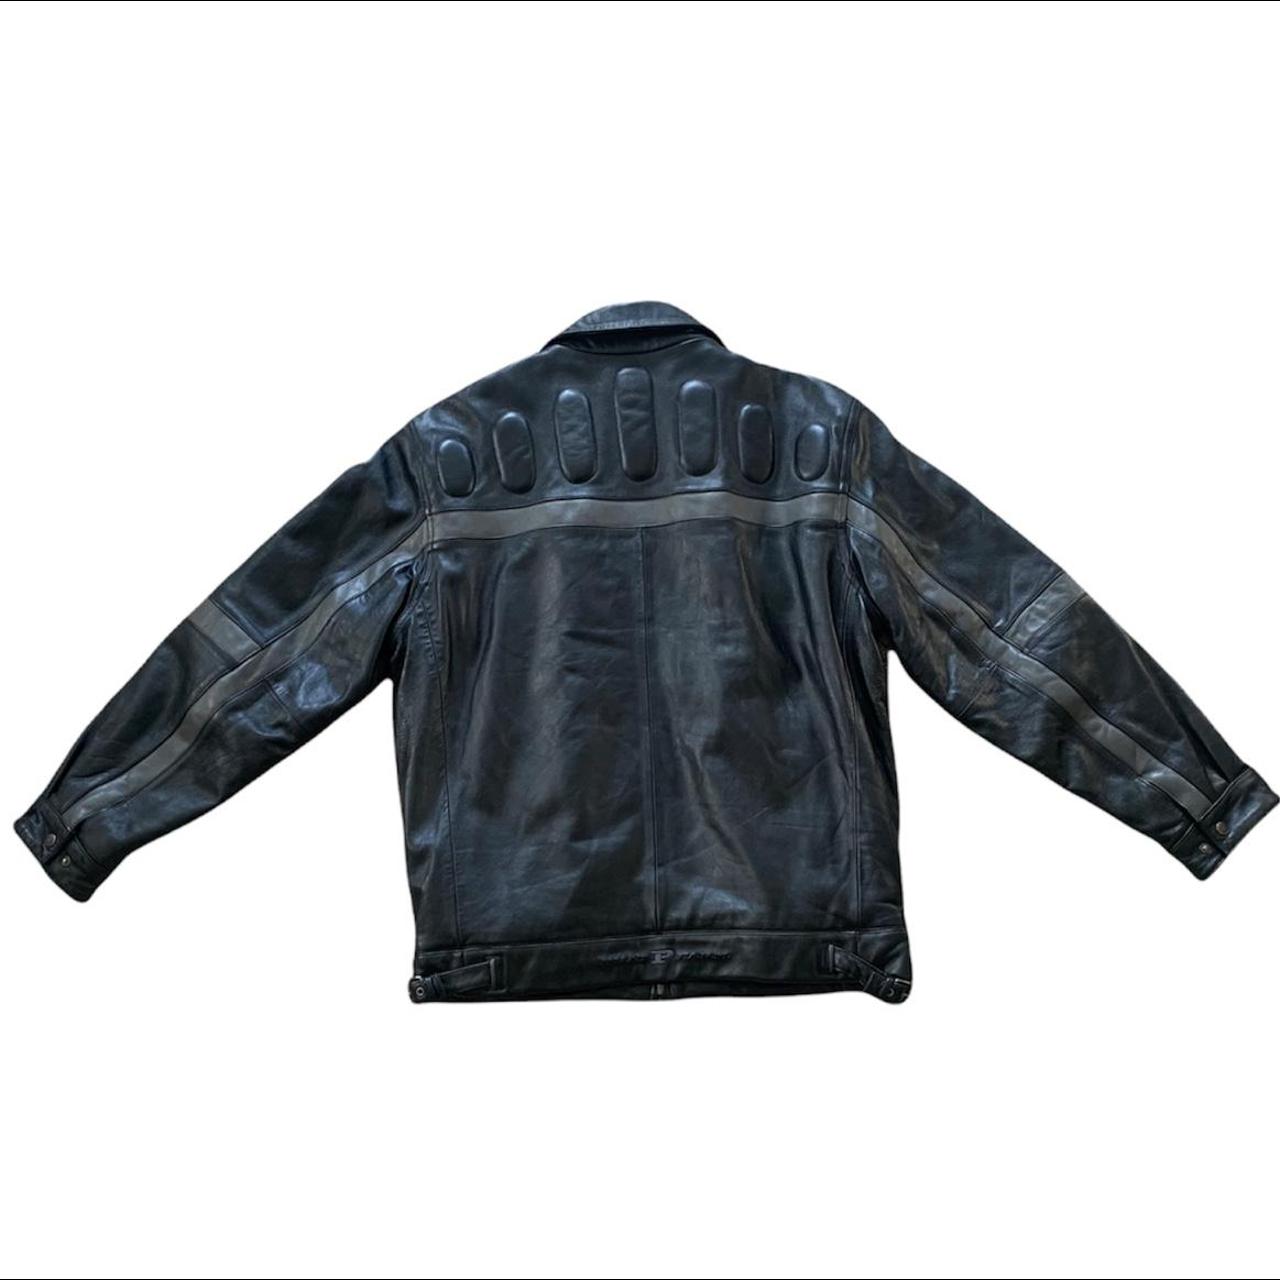 Phat farm leather jacket size large - Depop